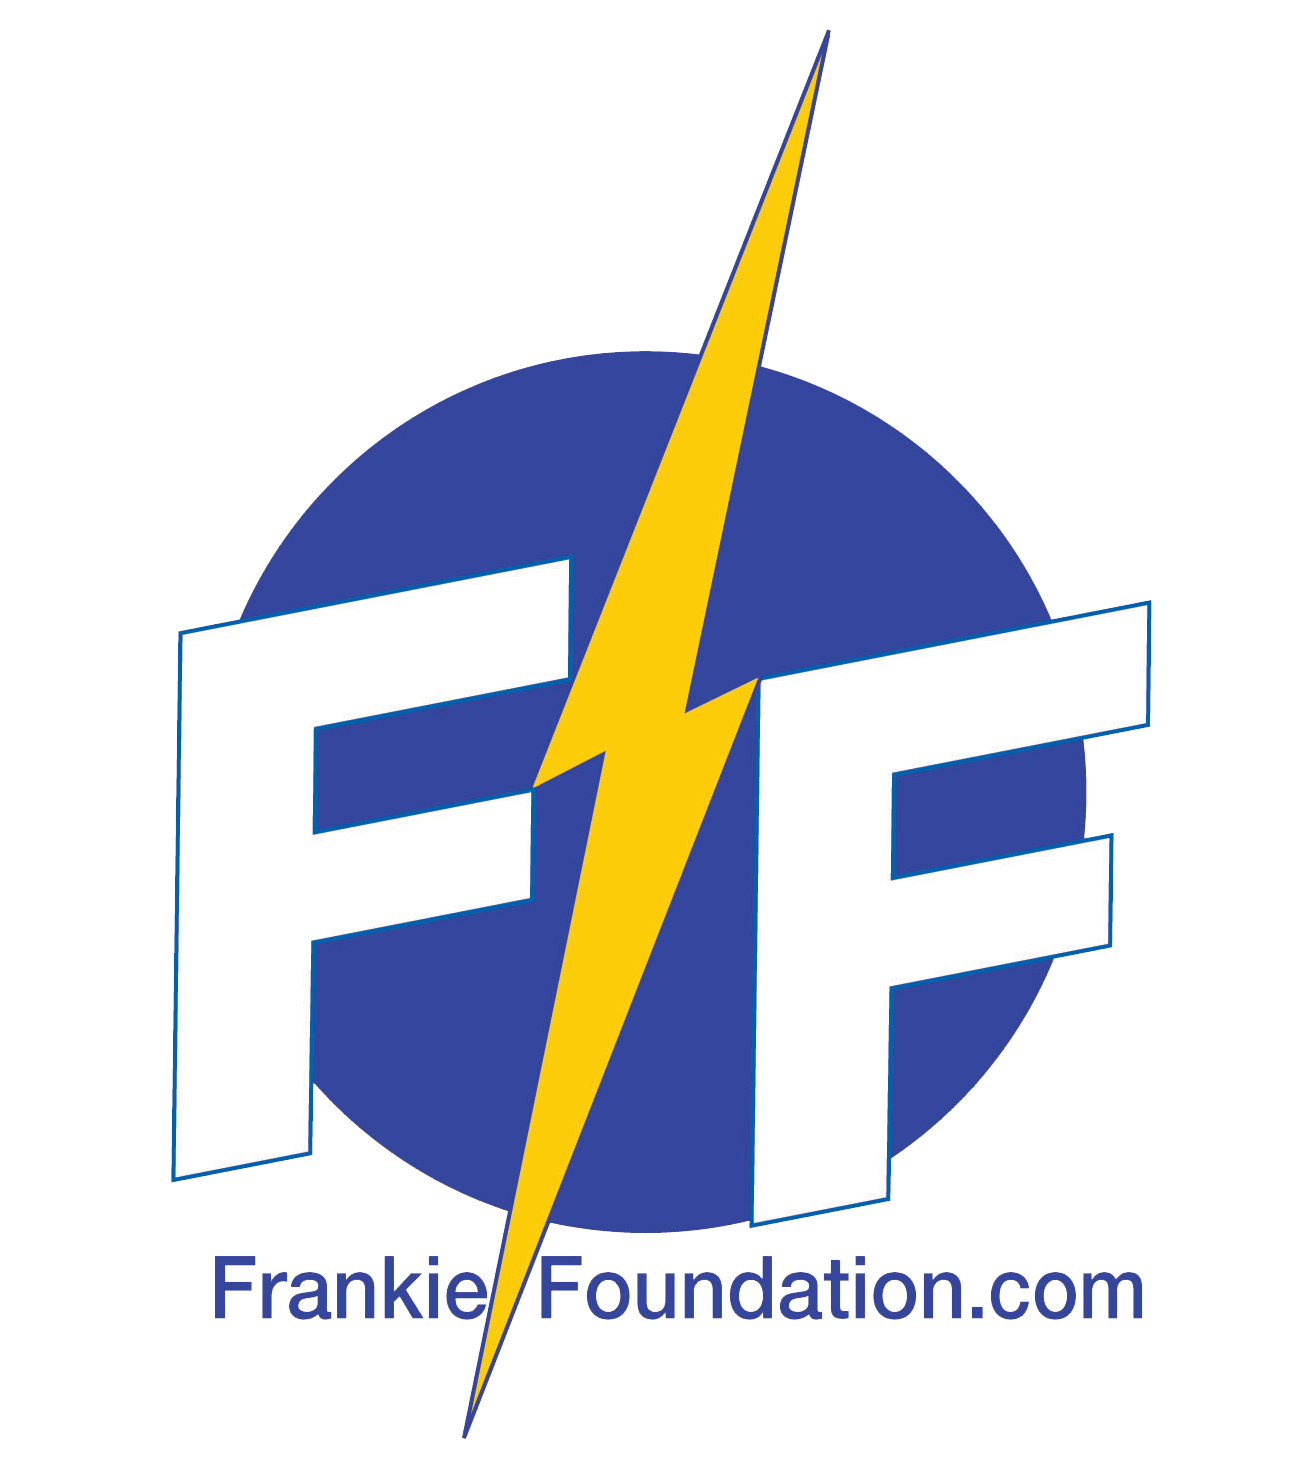 Frankie Foundation